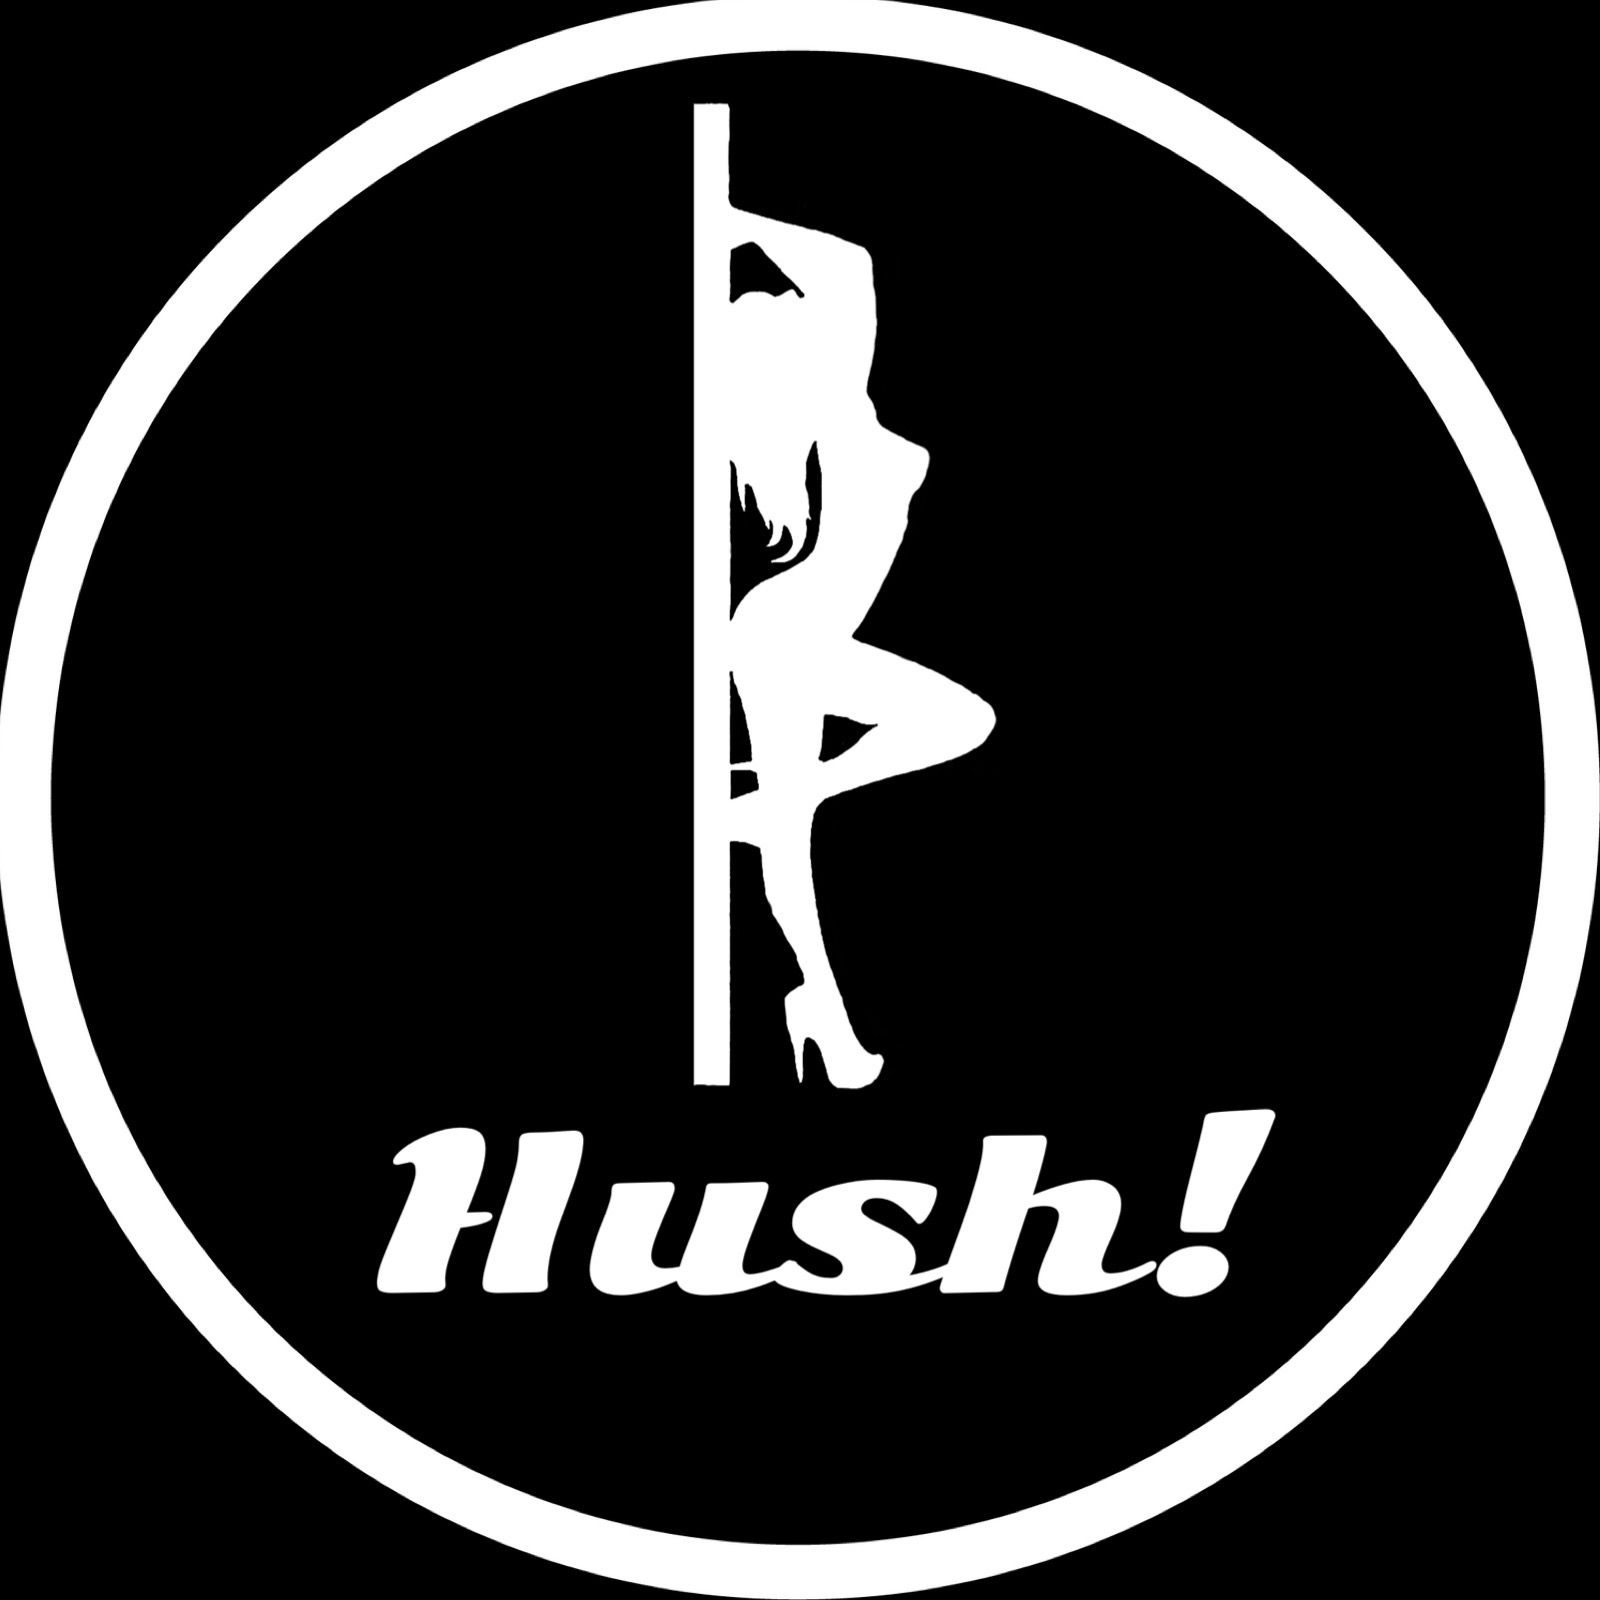 Hush! - Hush! Vol. 75- KC 3